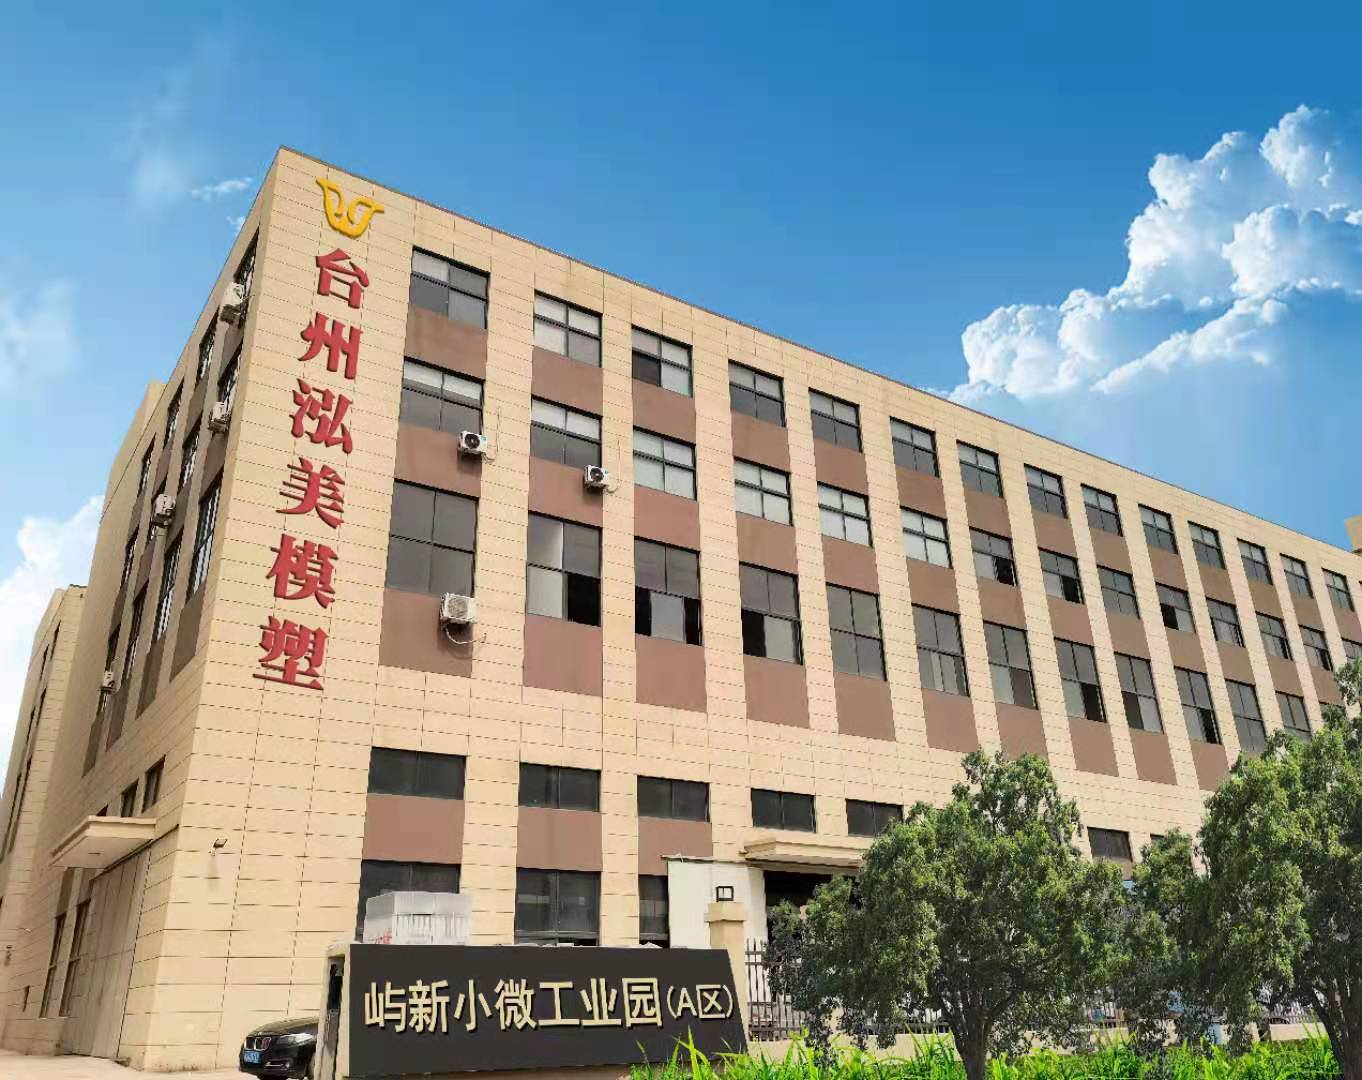 Hongmei Company is verhuisd naar een nieuw adres